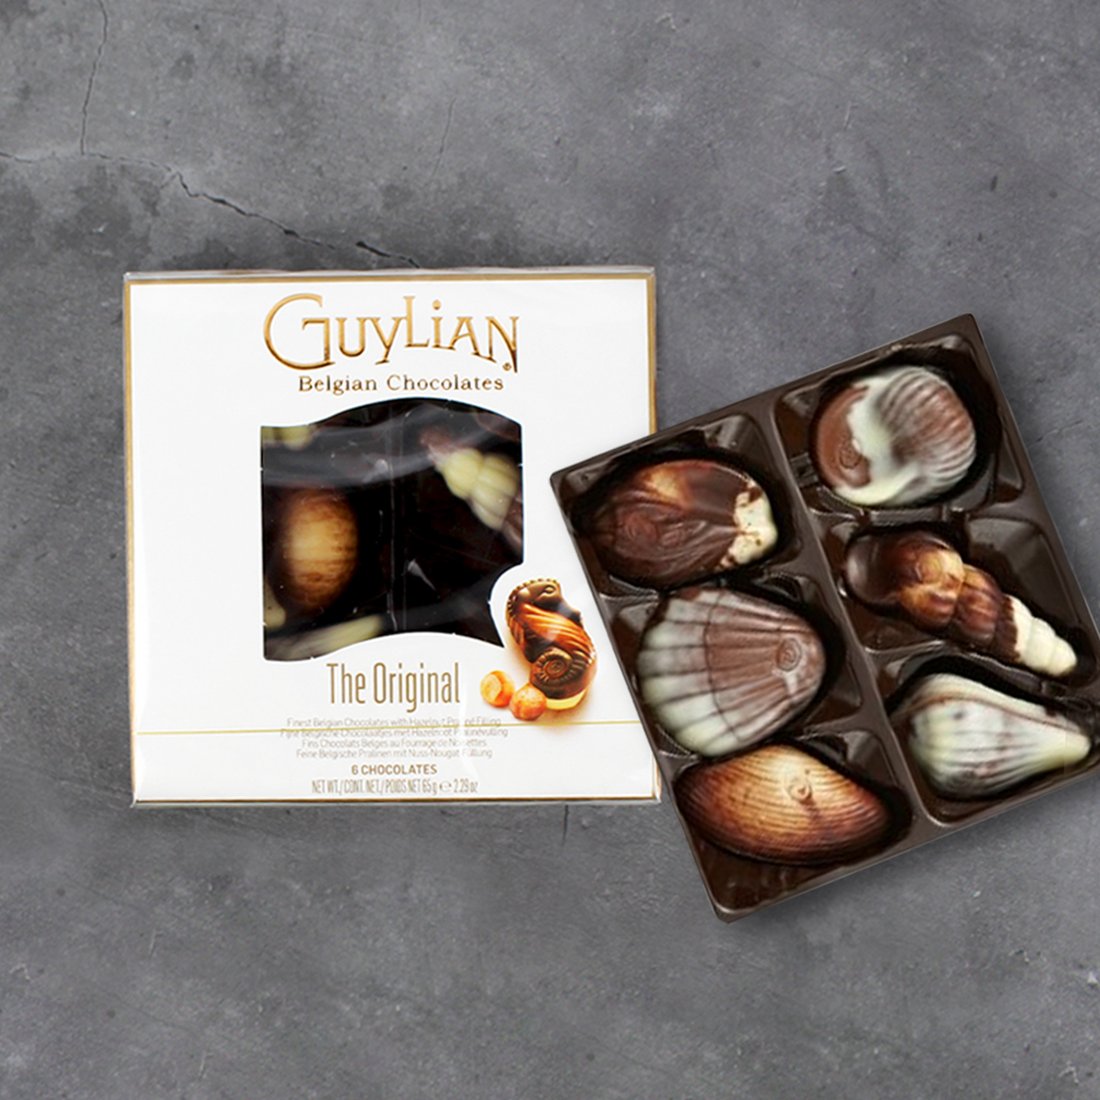 길리안 시쉘 초콜릿 65G 6구 / 벨기에 고급 초콜릿 기념일 발렌타인선물, 신세계적 쇼핑포털 Ssg.Com